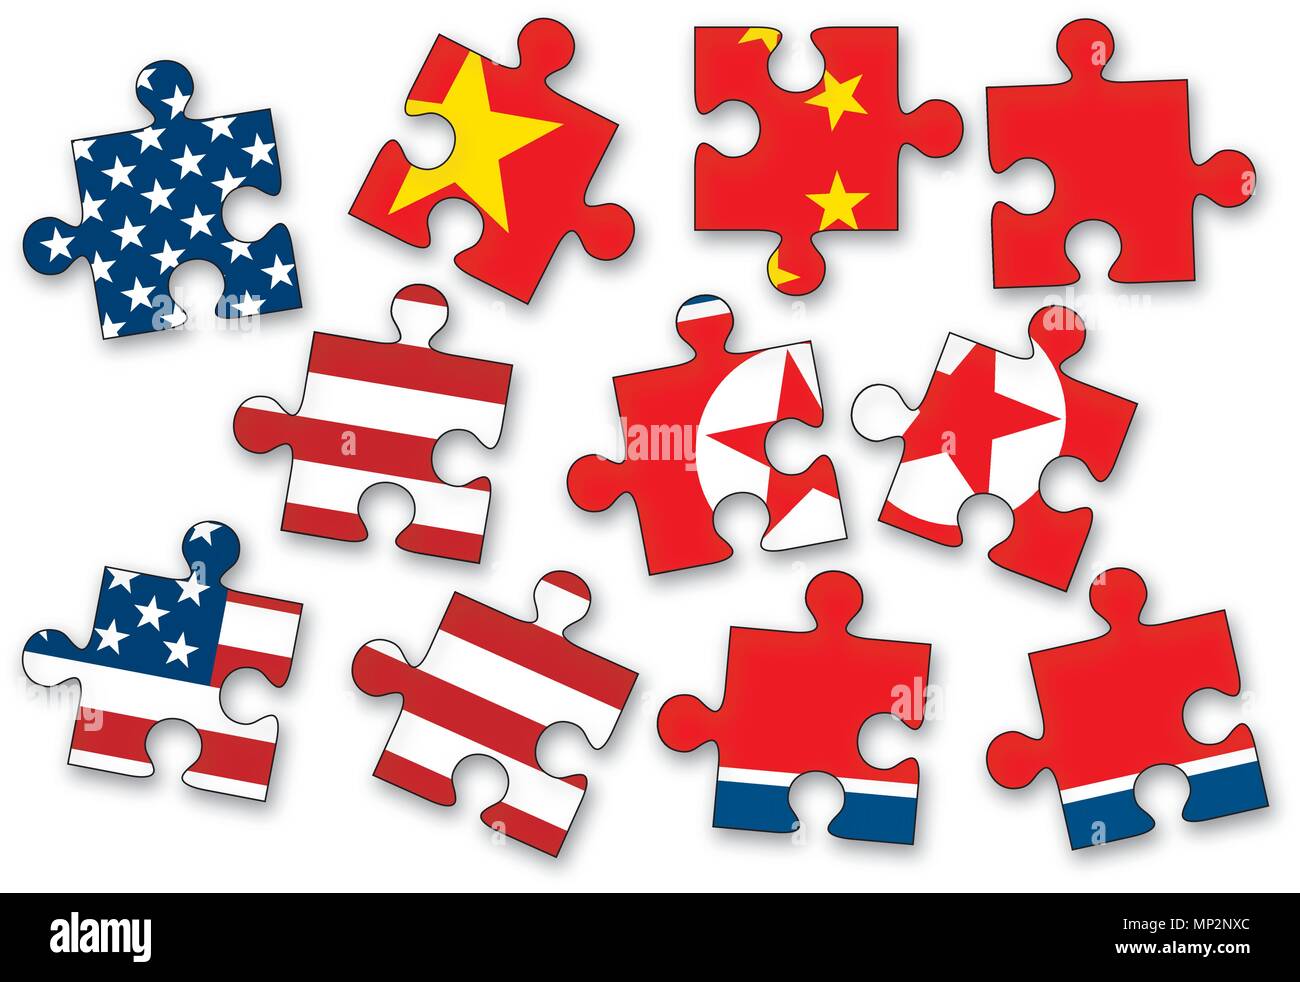 USA, China und Nordkorea als Stichsäge Puzzleteile mit den Flaggen der Vereinigten Staaten von Amerika, China und Nordkorea auf weißem Hintergrund. Stock Vektor